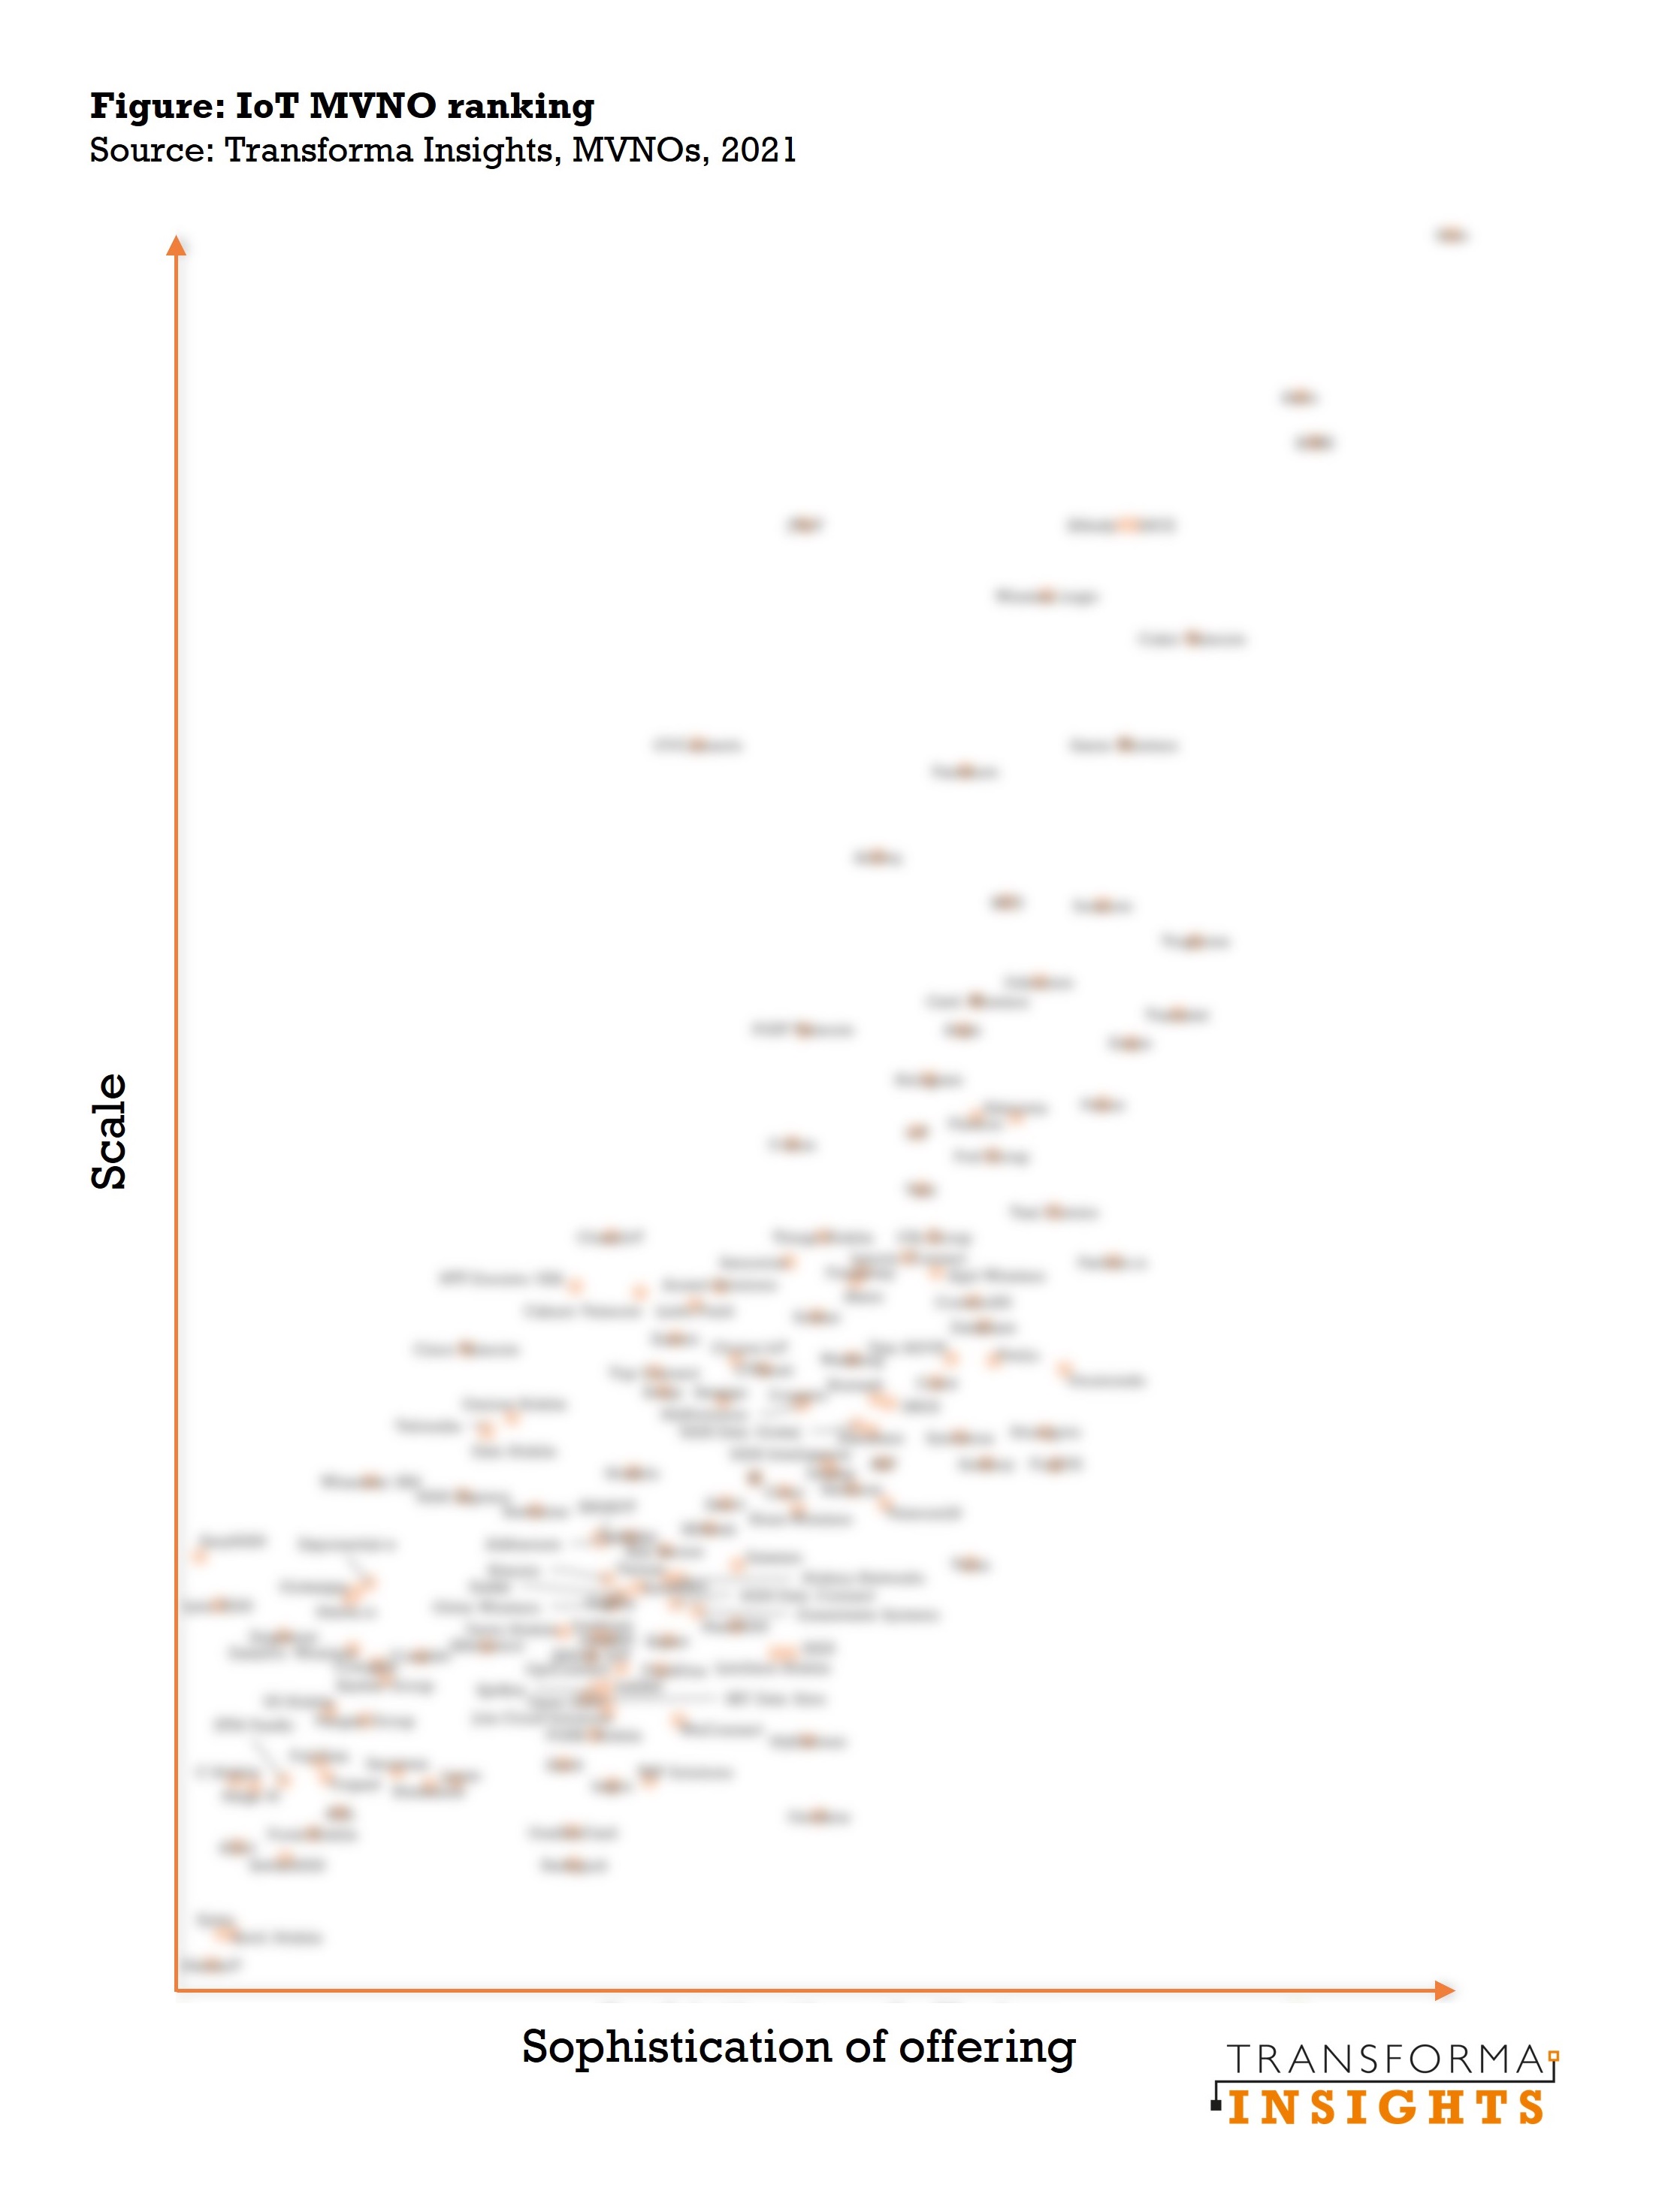 MVNO-rankings-blurred.jpg